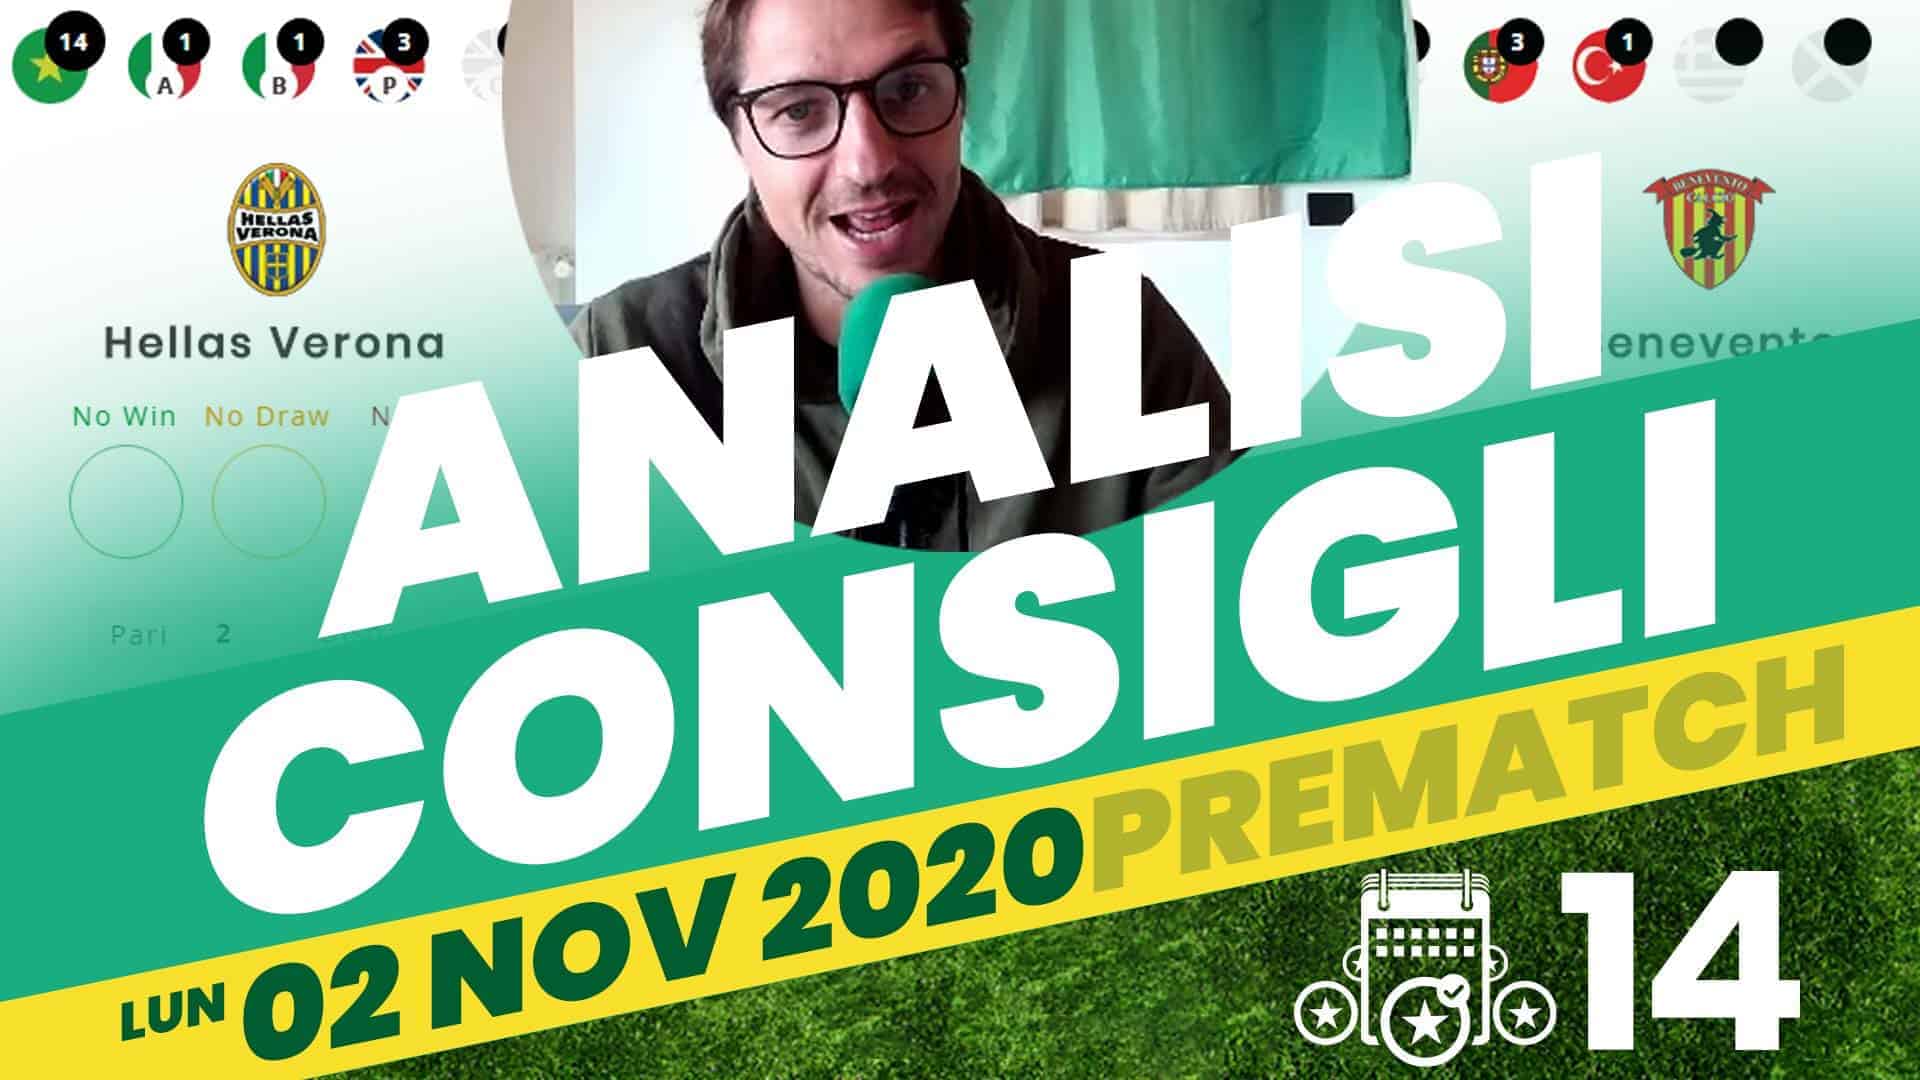 Pronostici Naturali Social YouTube Analisi Pre Partite Lunedi 2 Nov 2020